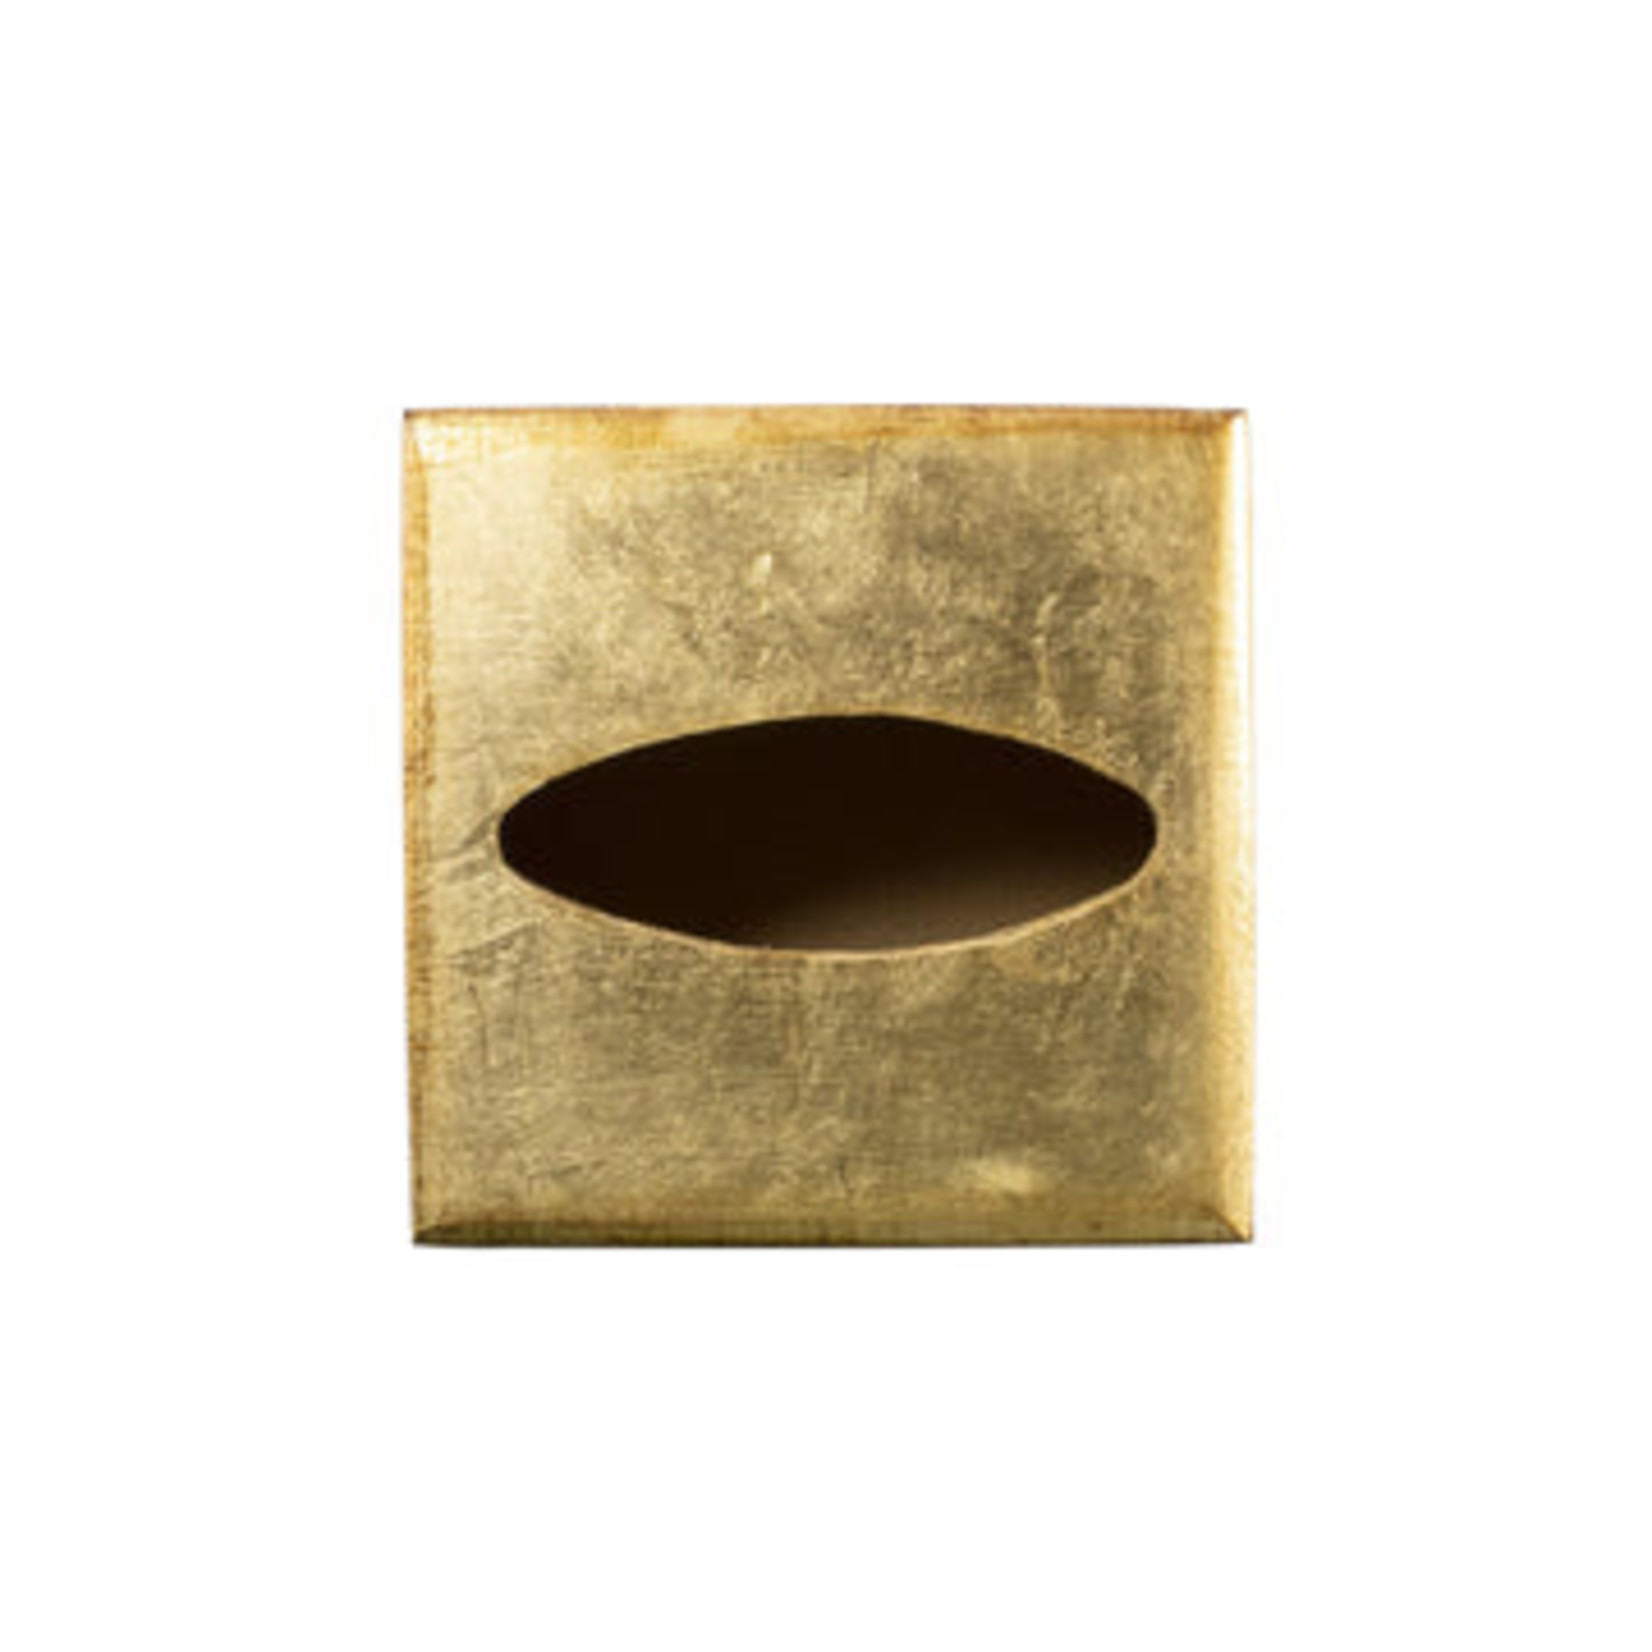 Florentine Wooden Gold Tissue Box